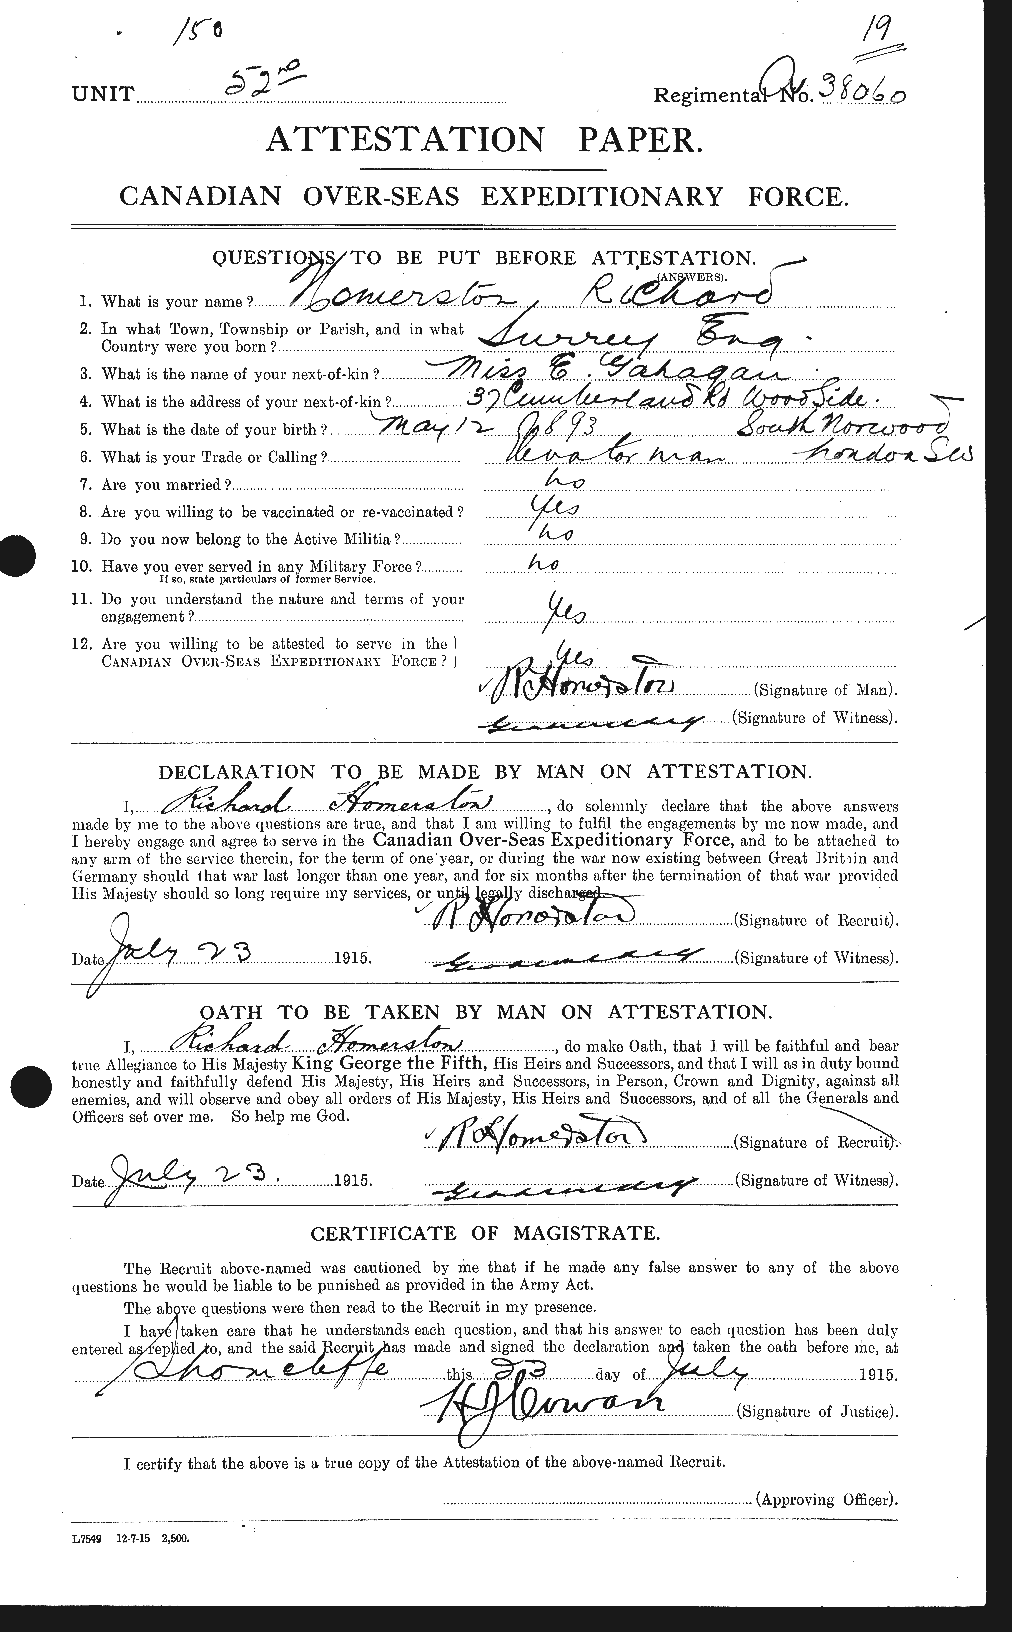 Dossiers du Personnel de la Première Guerre mondiale - CEC 405493a